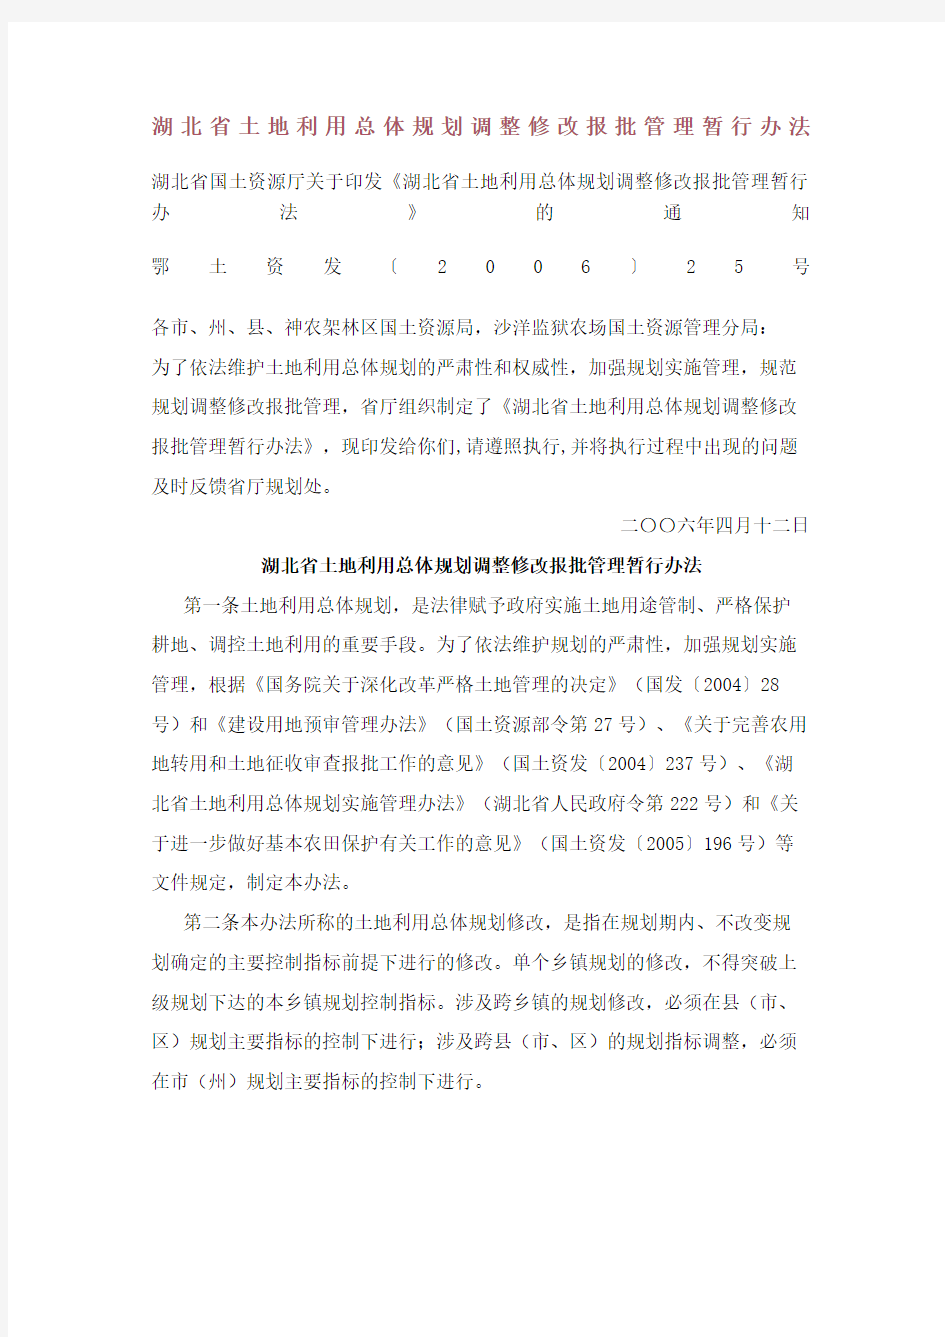 湖北省土地利用总体规划调整修改报批管理暂行办法修订版